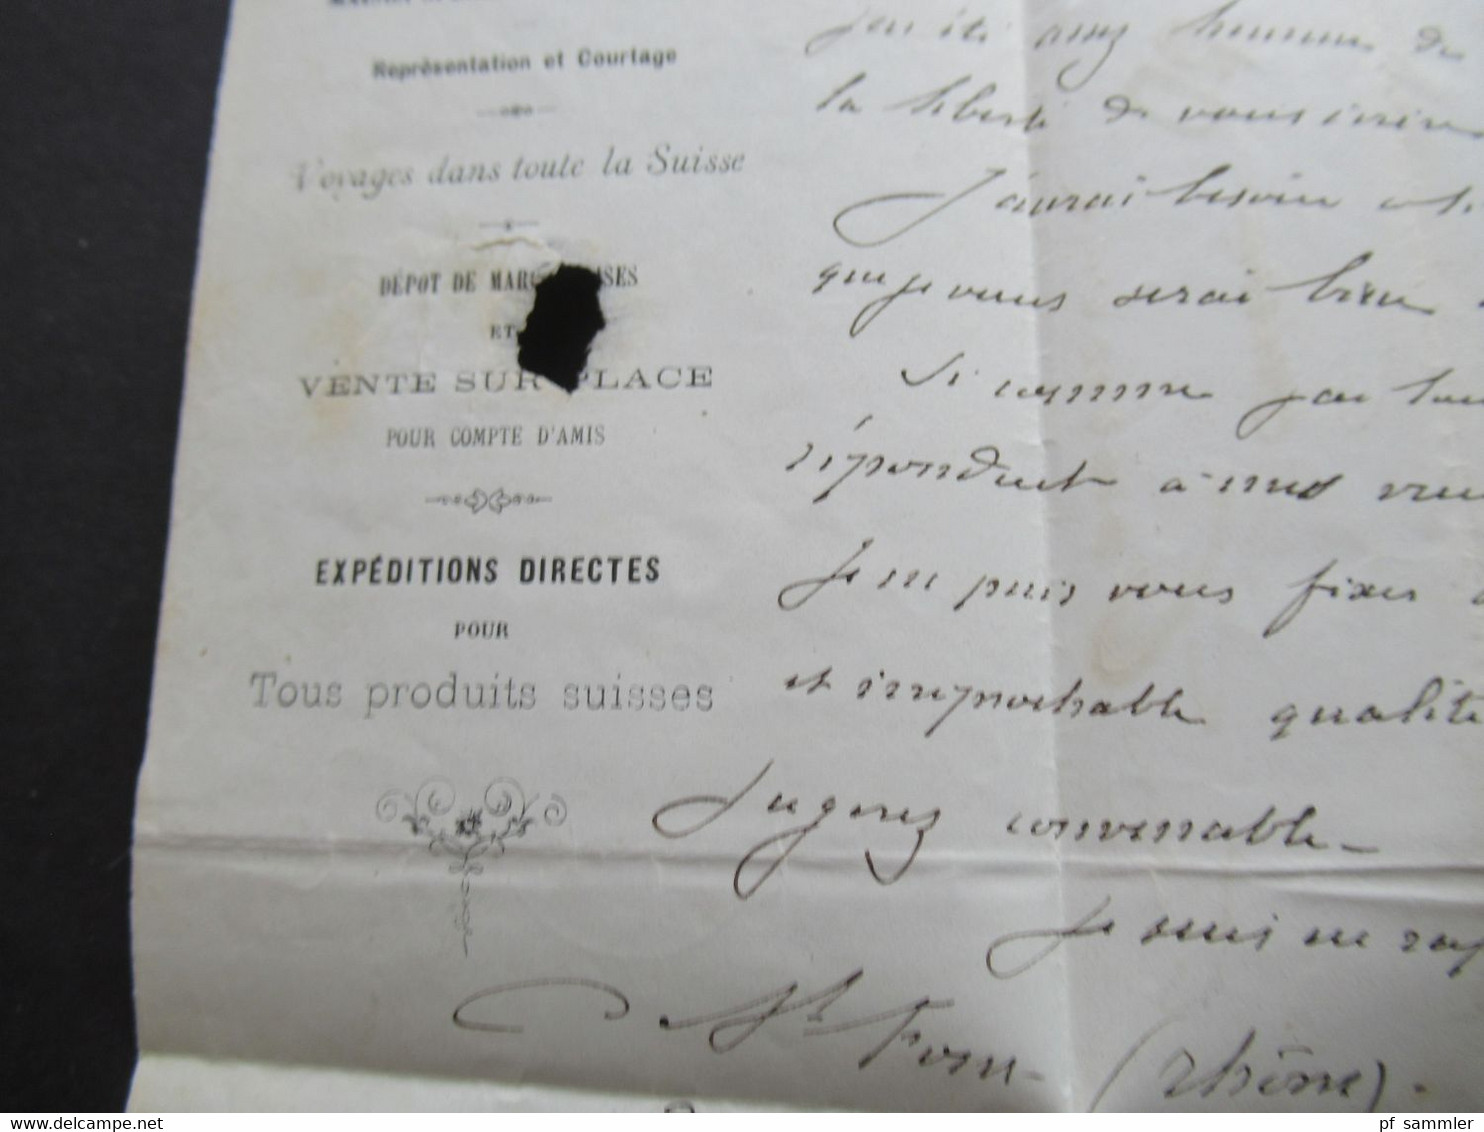 Schweiz 1870 Sitzende Helvetia Nr.33 EF PD Brief Geneve - Paris und weitergeleitet nach Tournon / Suisse AMB Marseille